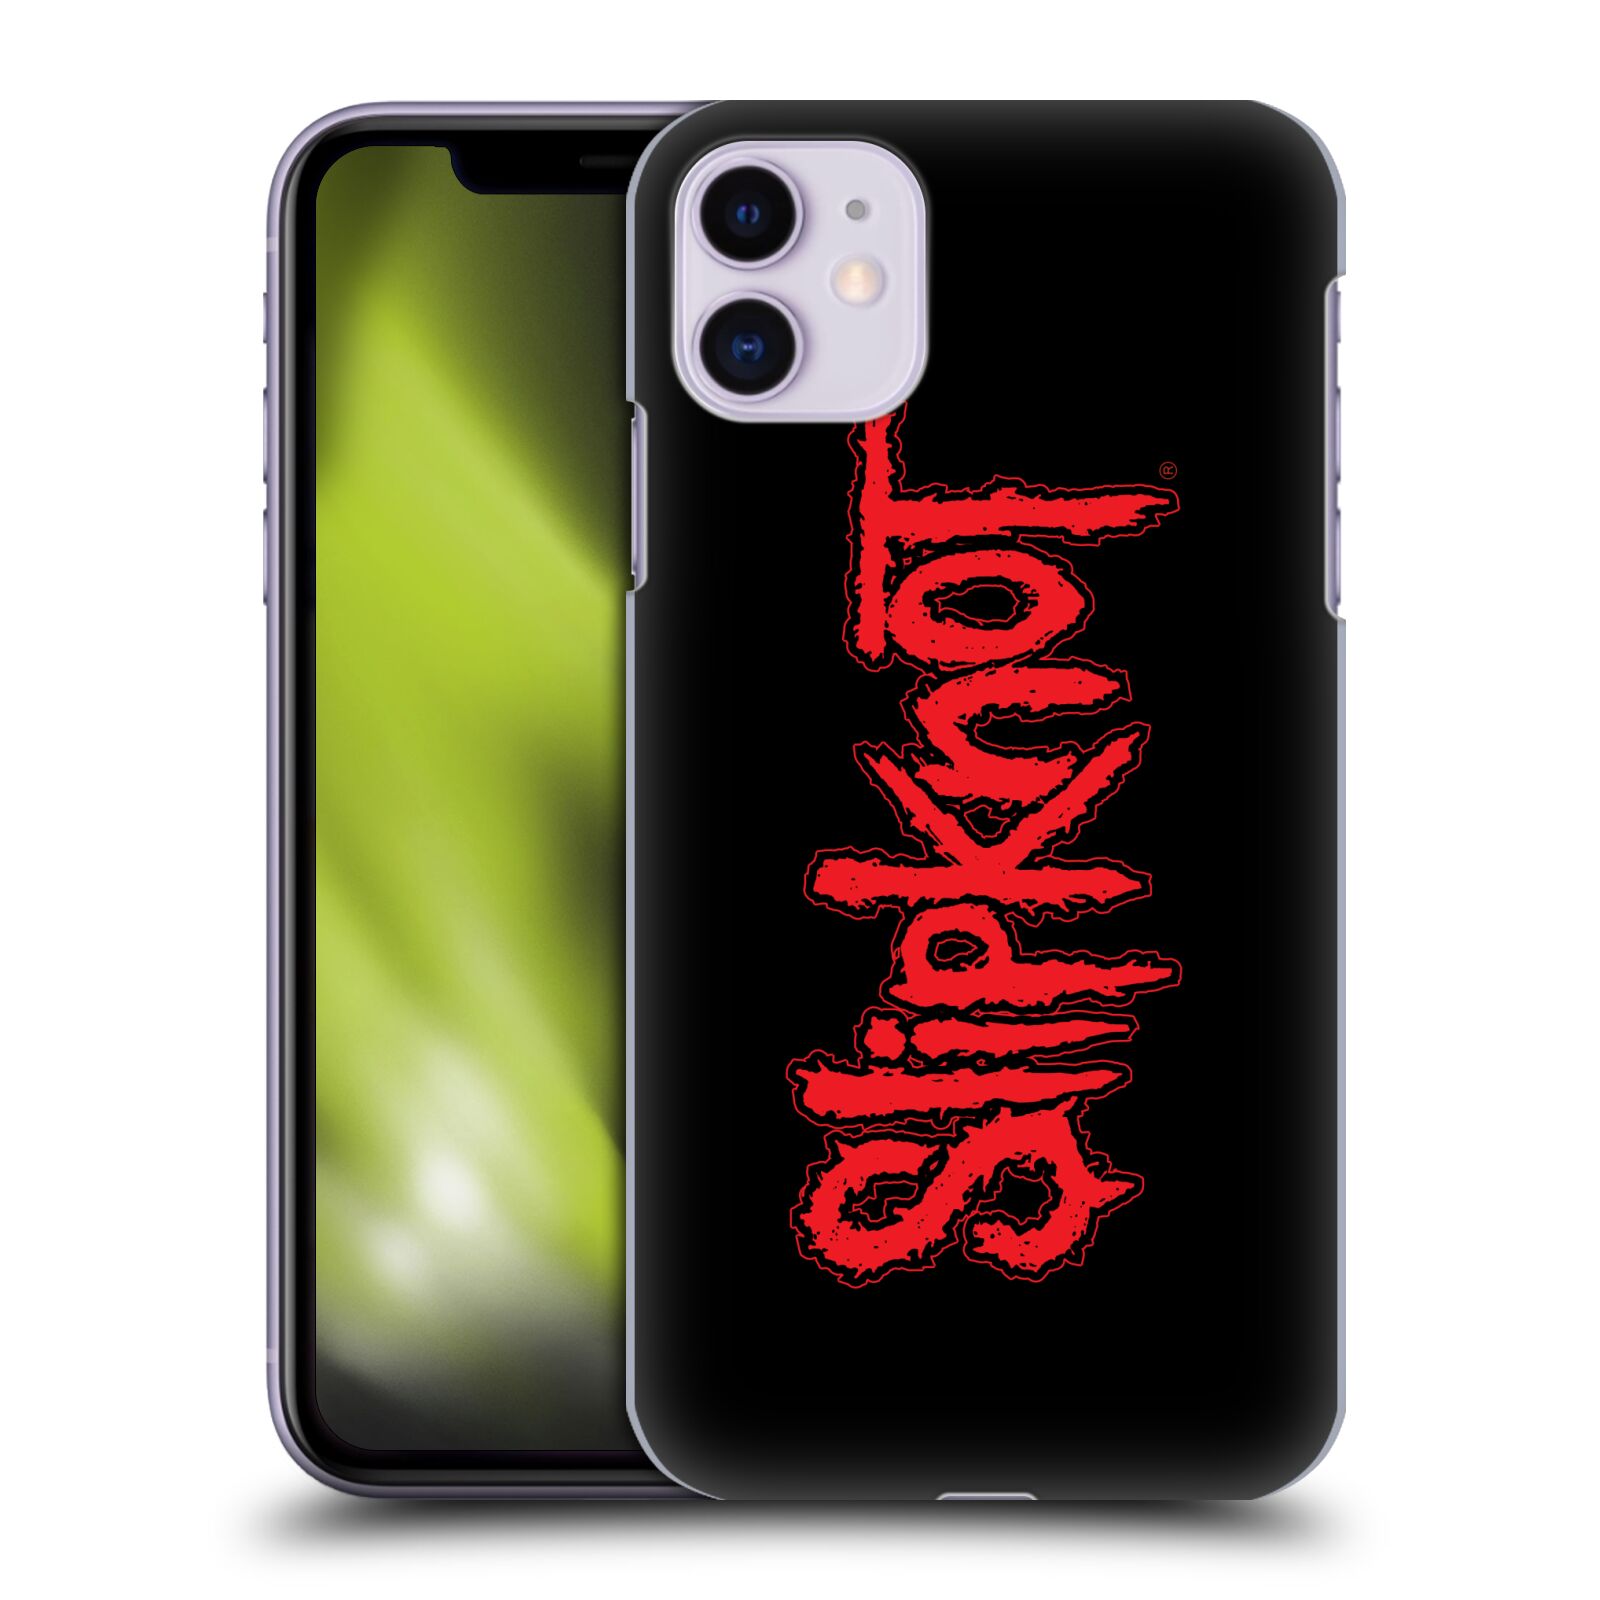 Pouzdro na mobil Apple Iphone 11 - HEAD CASE - hudební skupina Slipknot logo velké